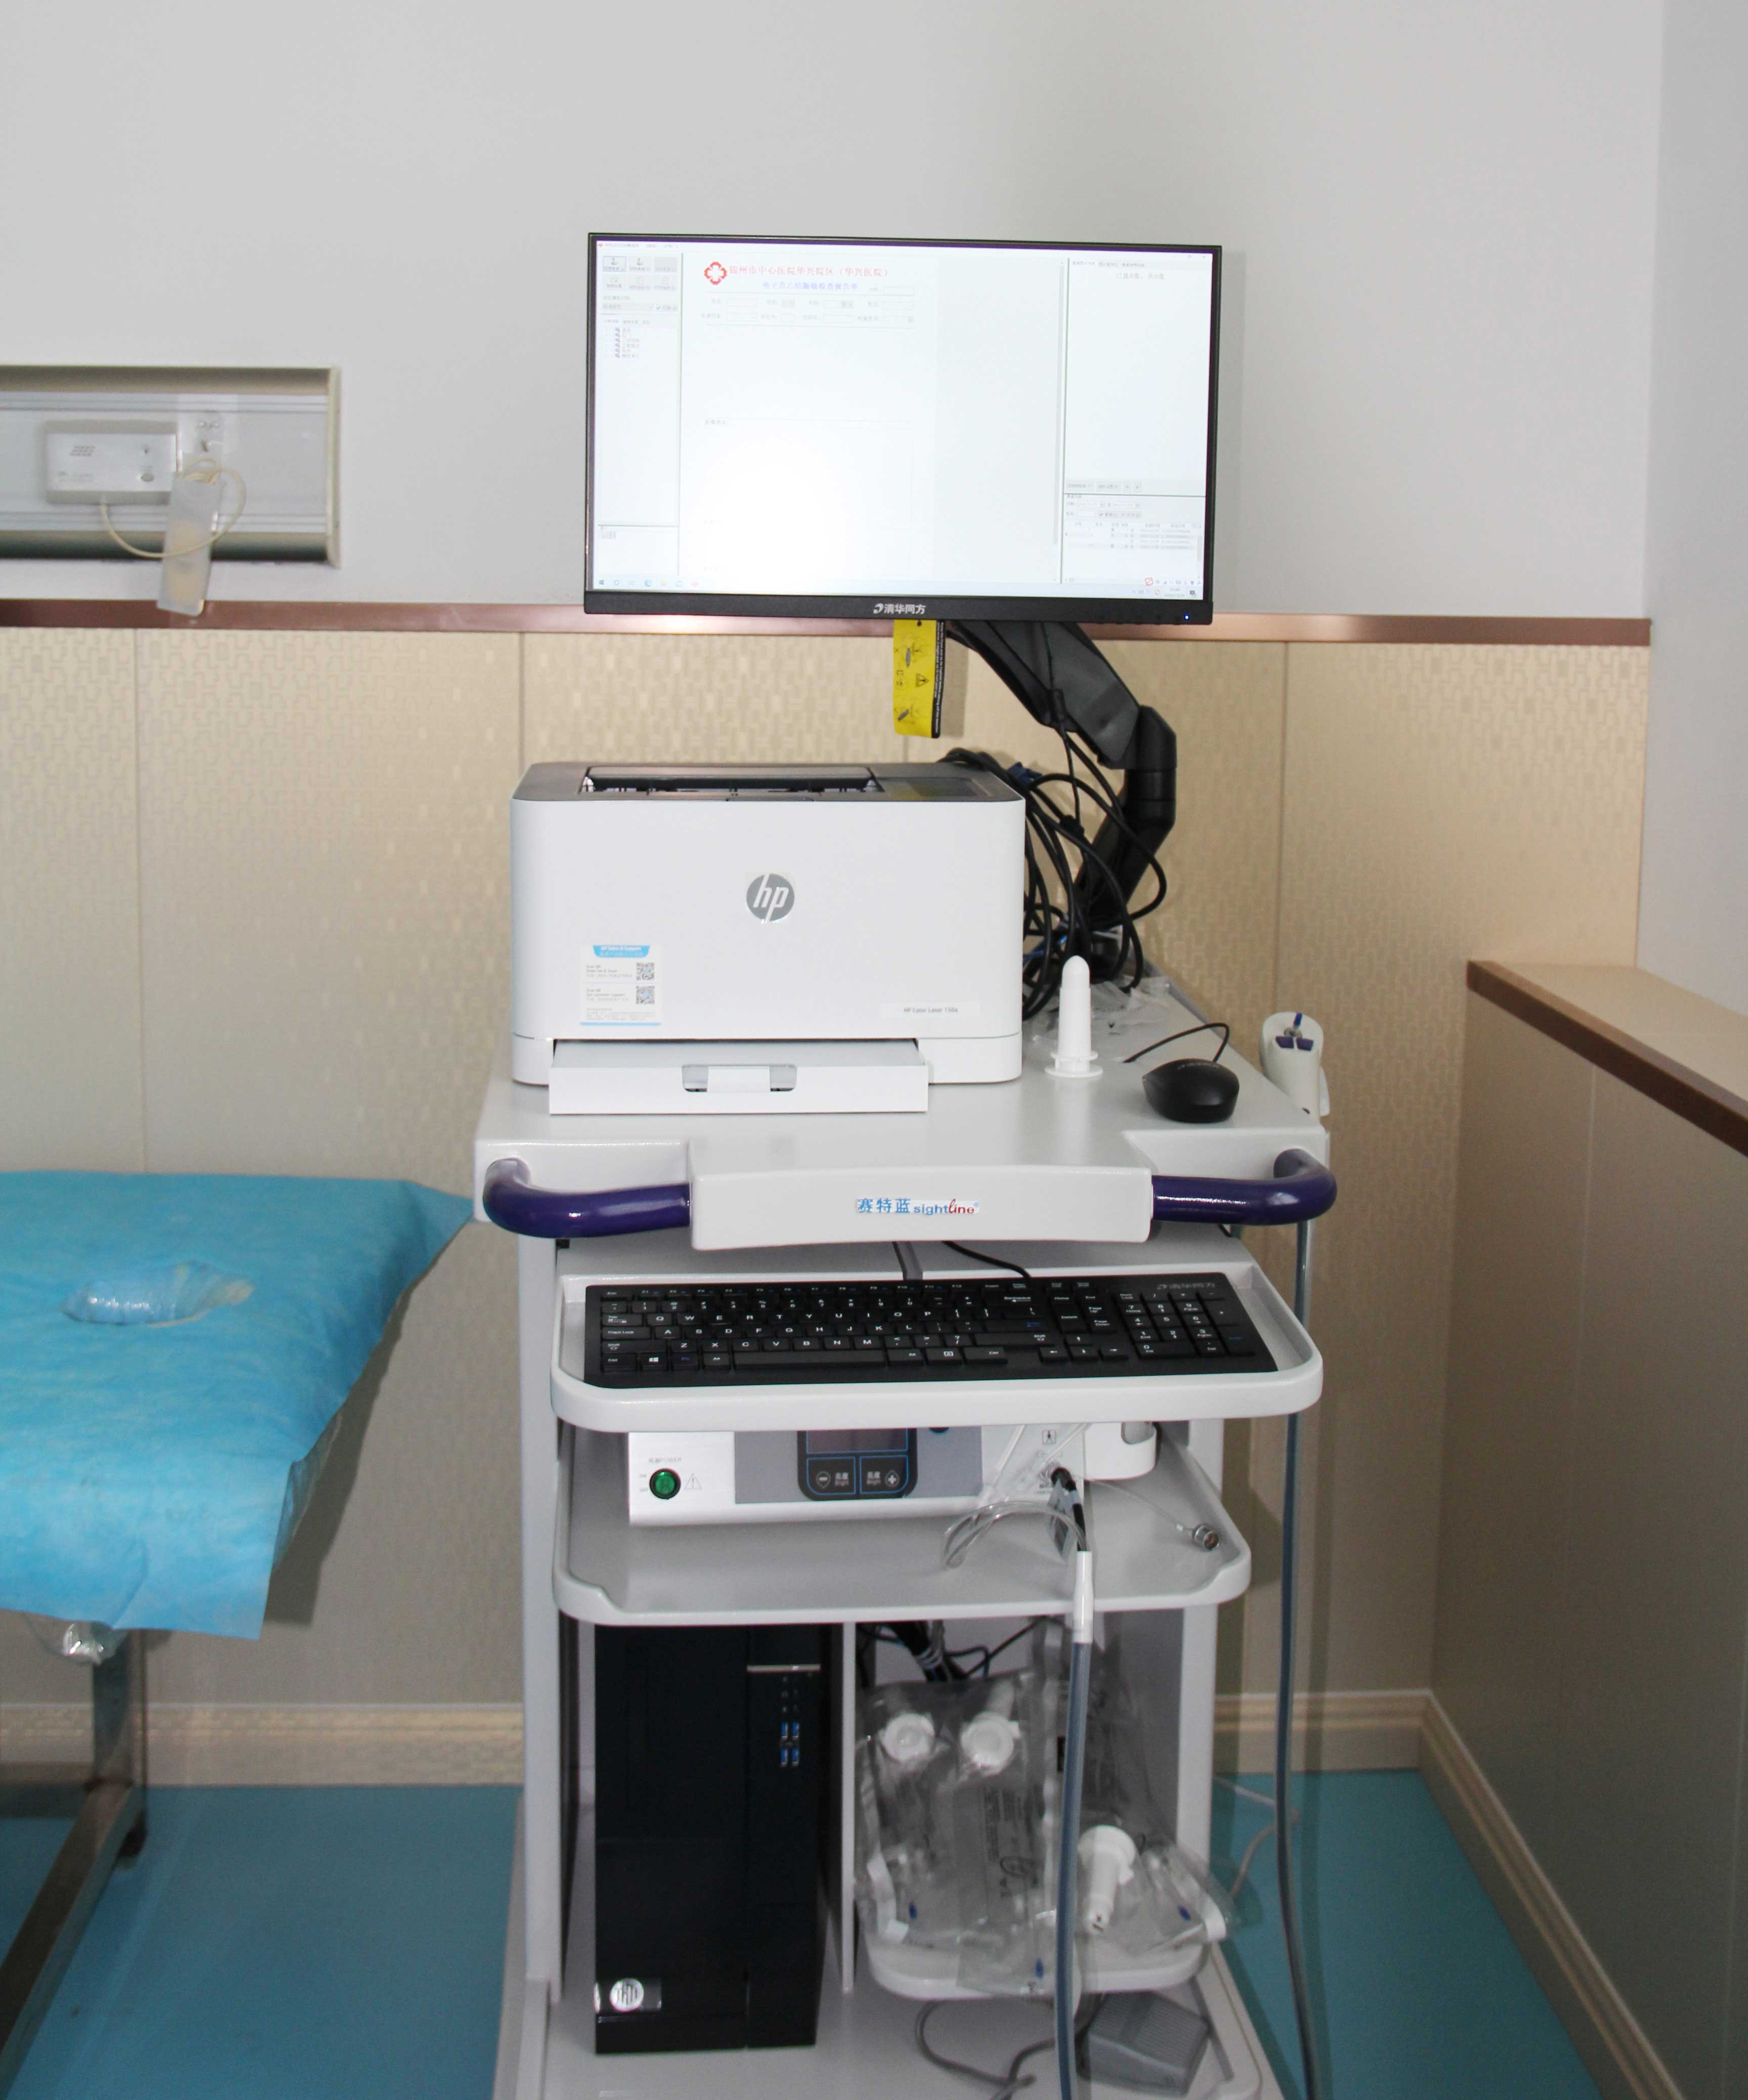 锦州市中心医院马应龙肛肠诊疗中心现已引进赛特蓝D-001A电子直乙结肠镜。